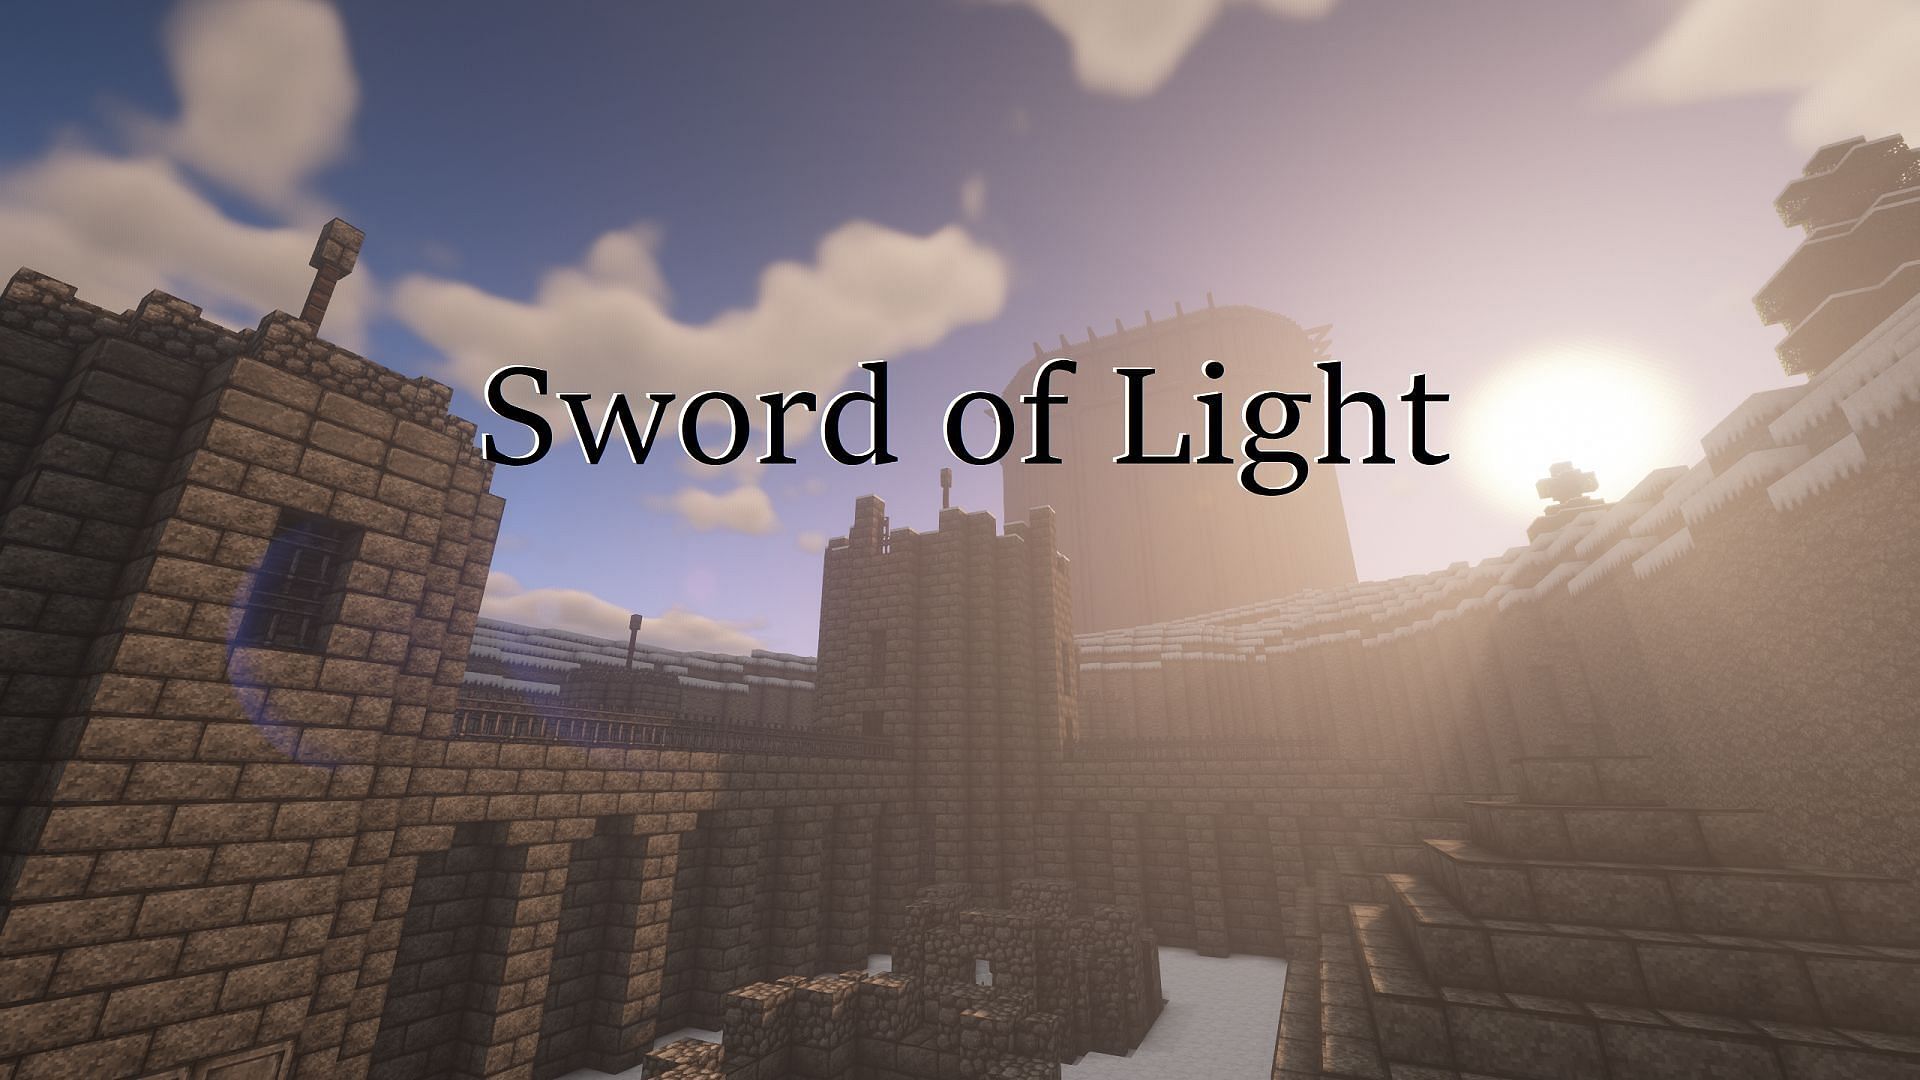 Official Sword of Light logo # (Image via Spaniel / Minecraft Maps)